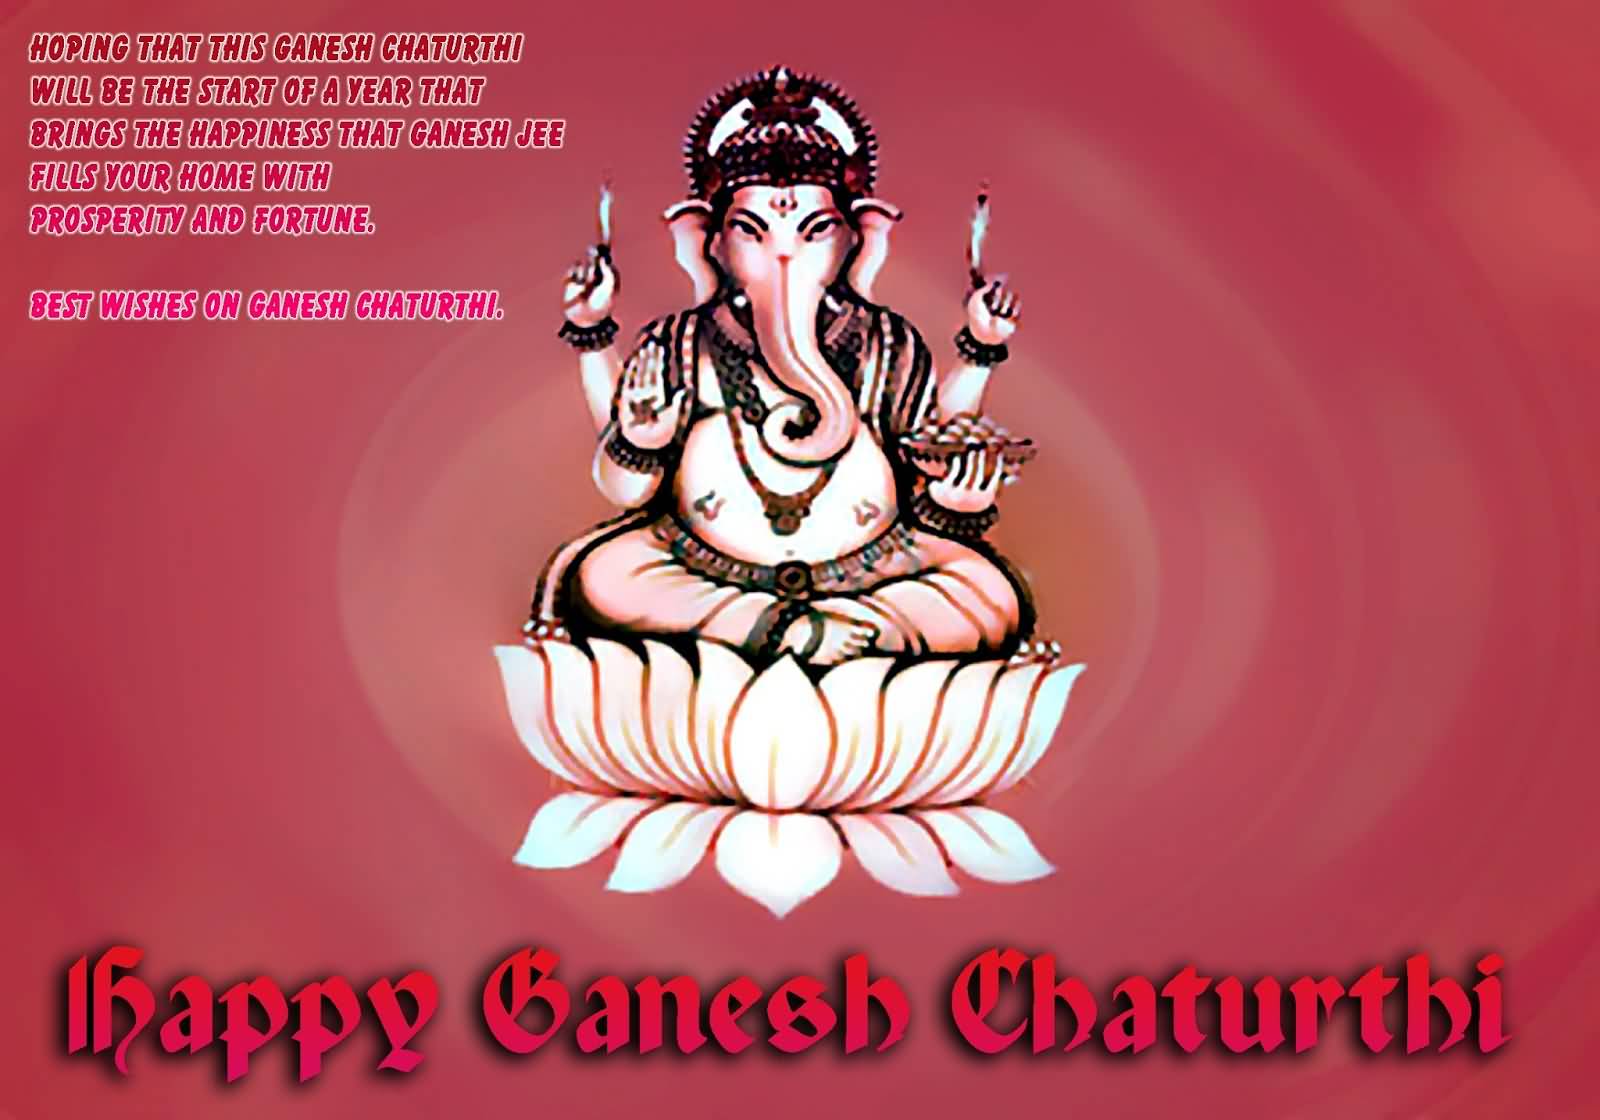 Best Wishes On Ganesh Chaturthi Happy Ganesh Chaturthi 2016